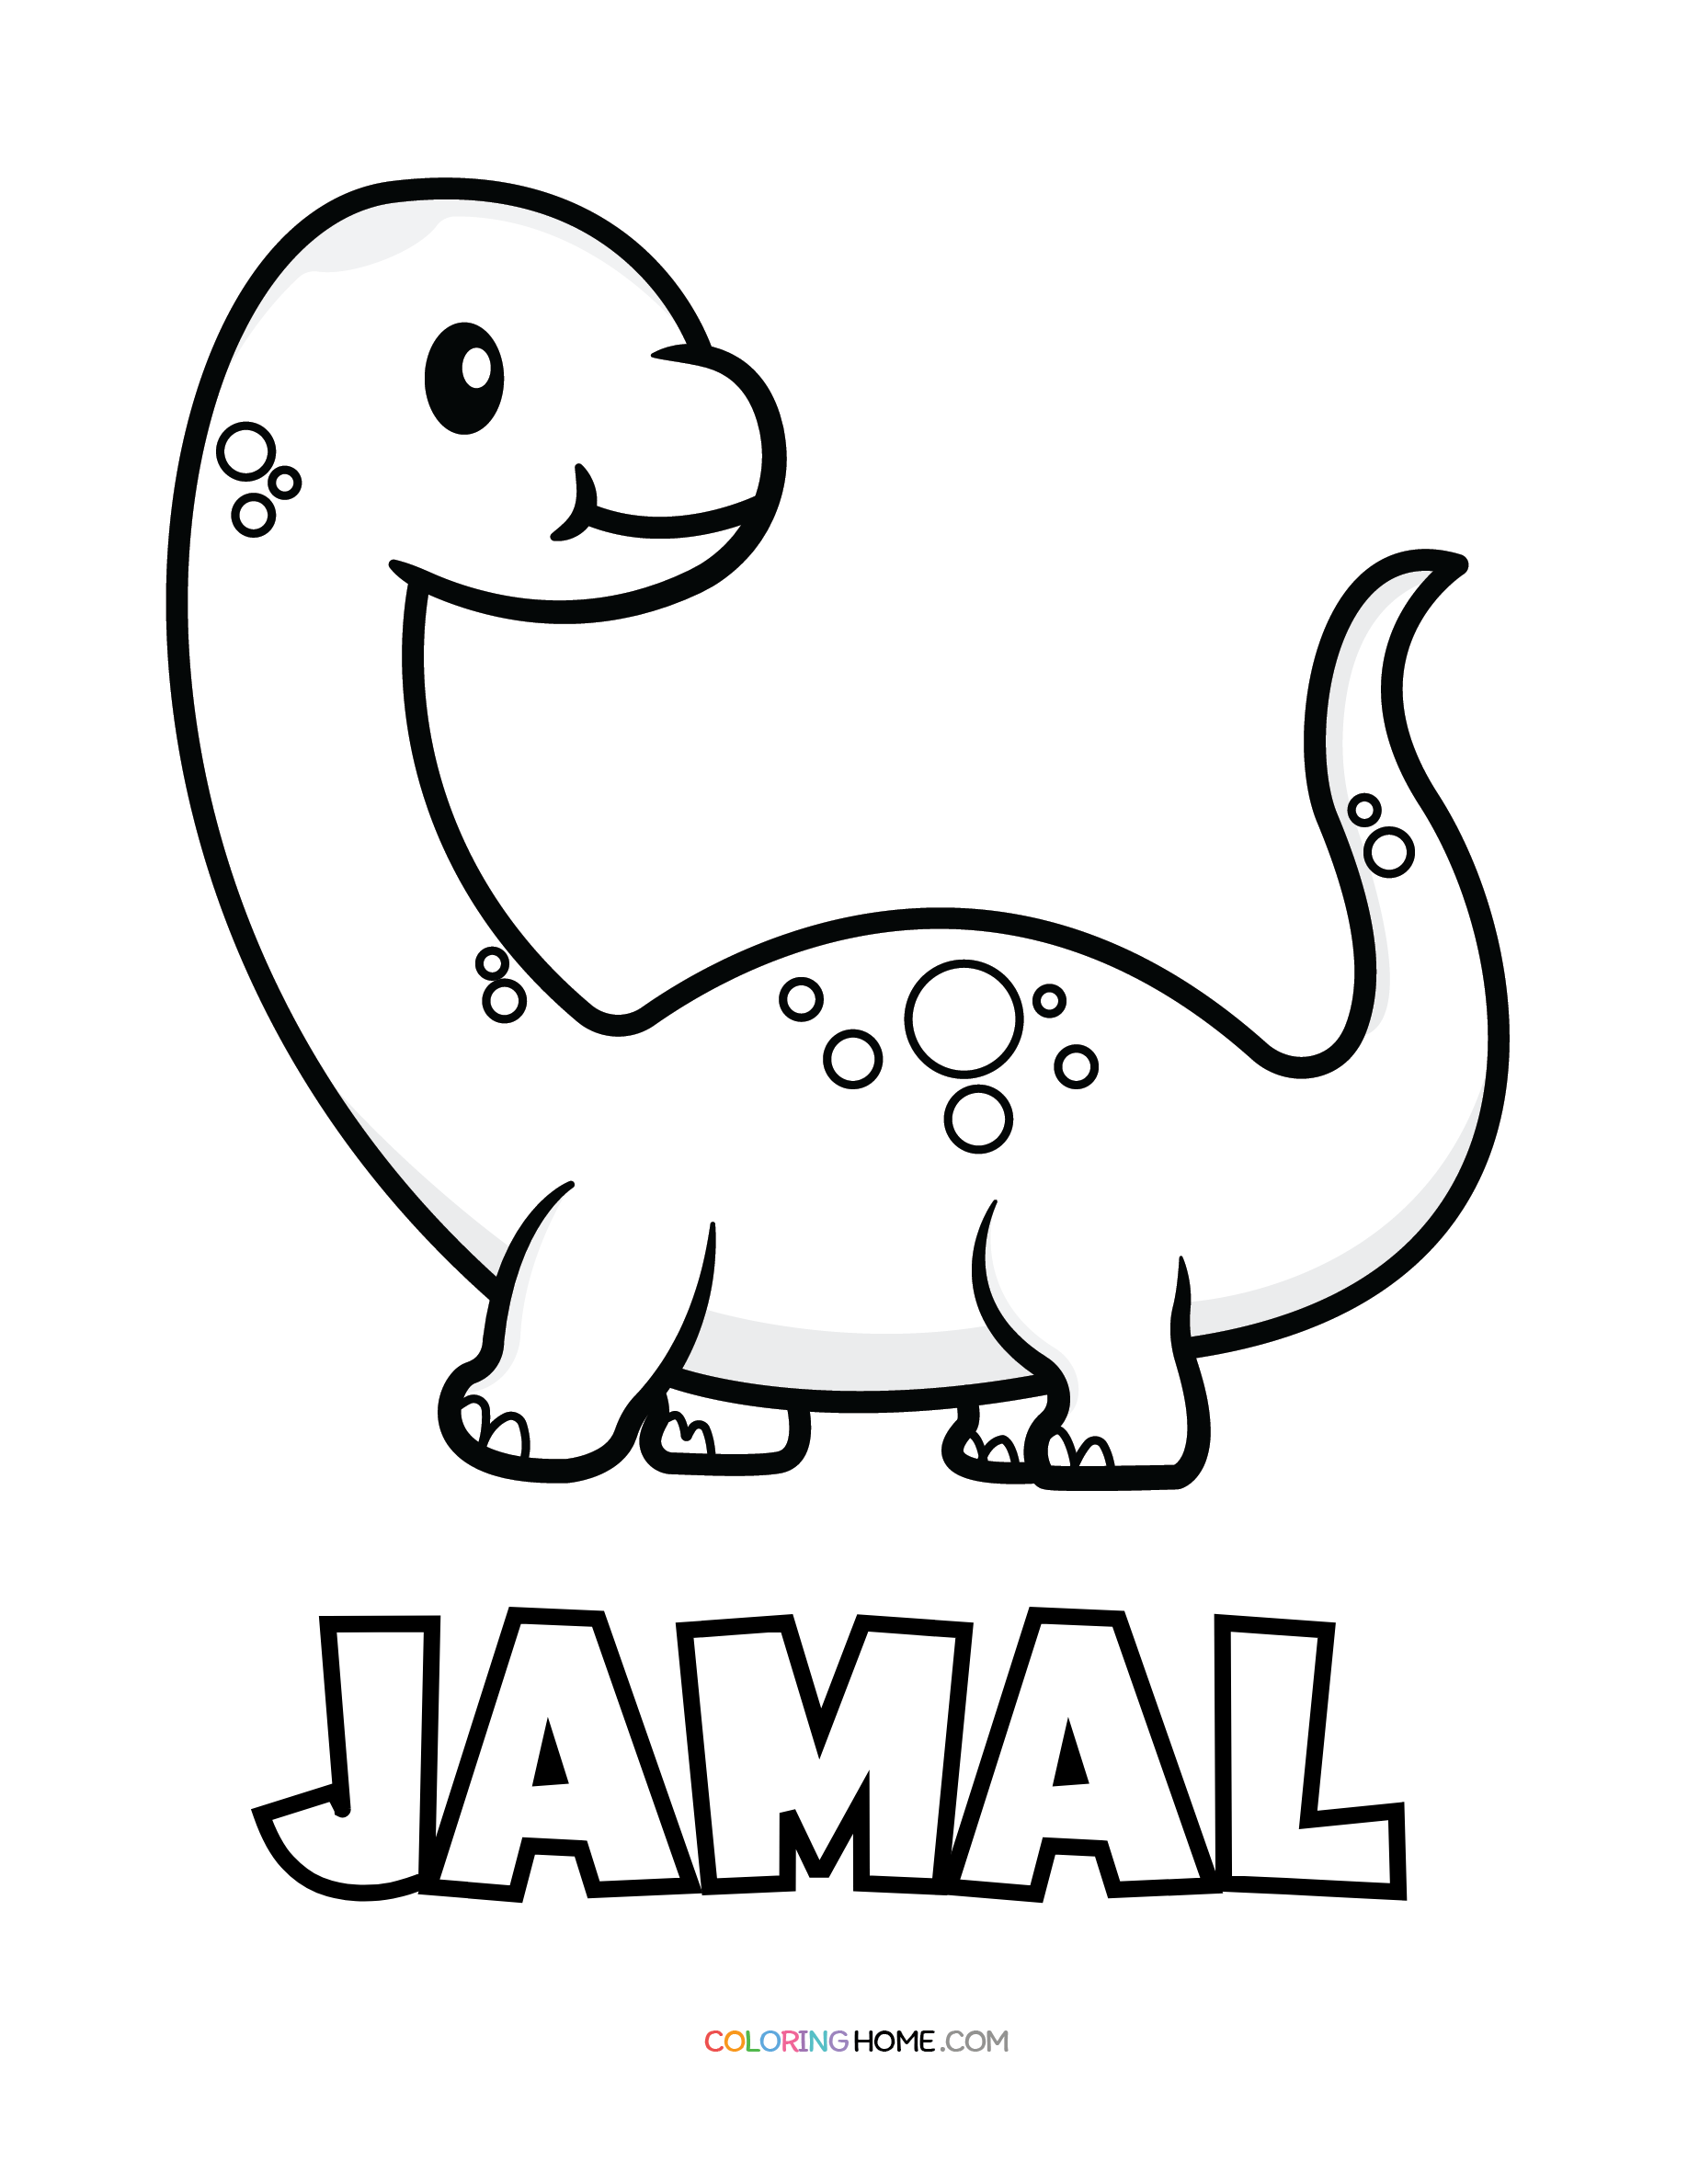 Jamal dinosaur coloring page